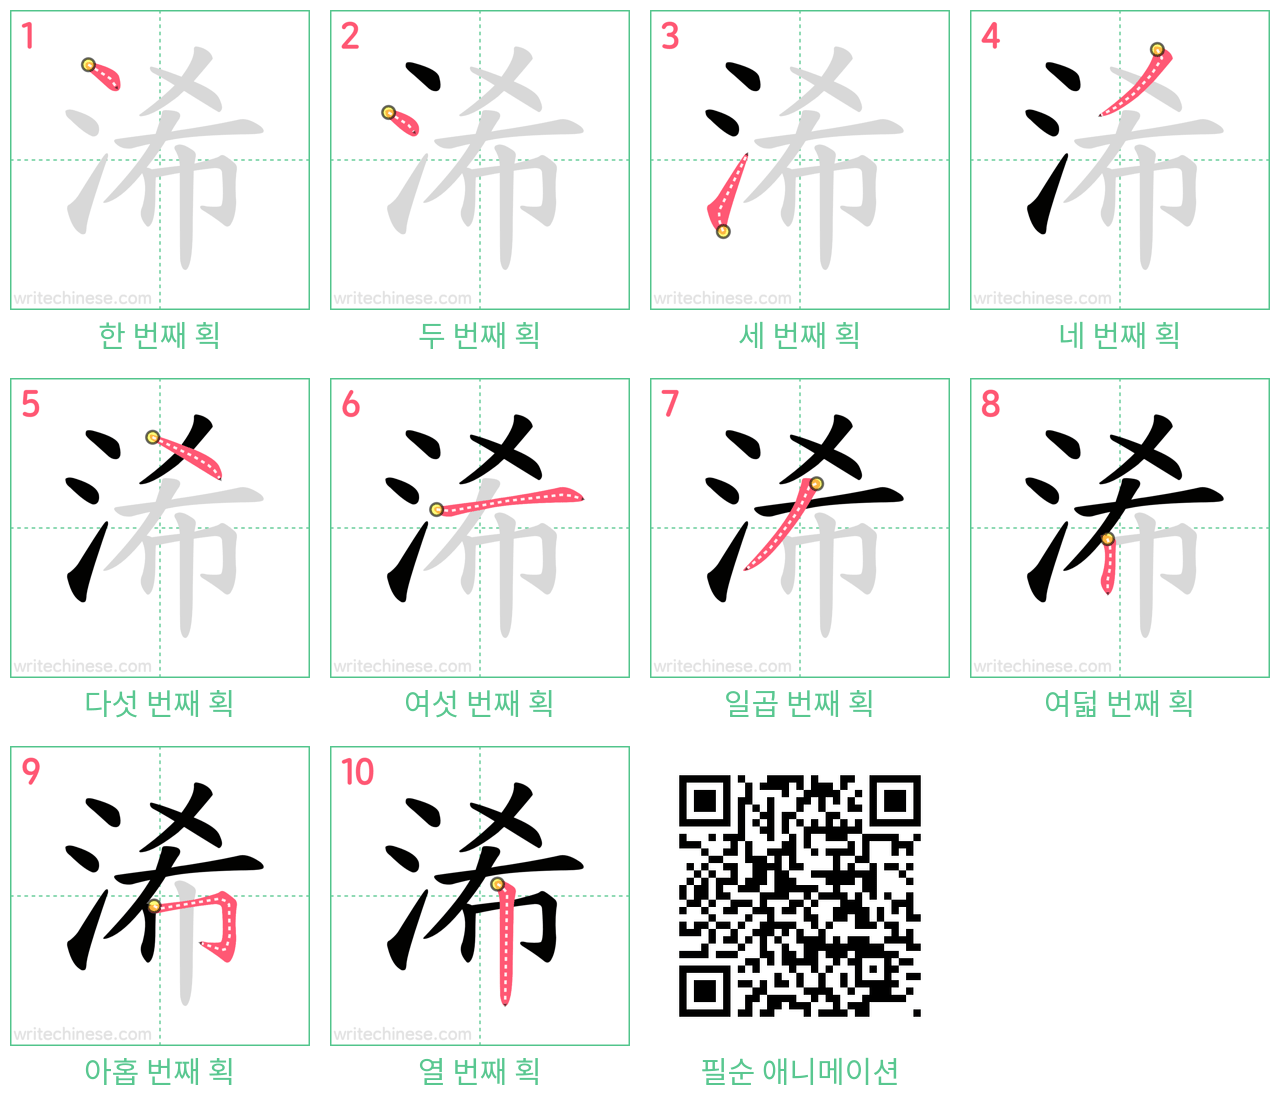 浠 step-by-step stroke order diagrams